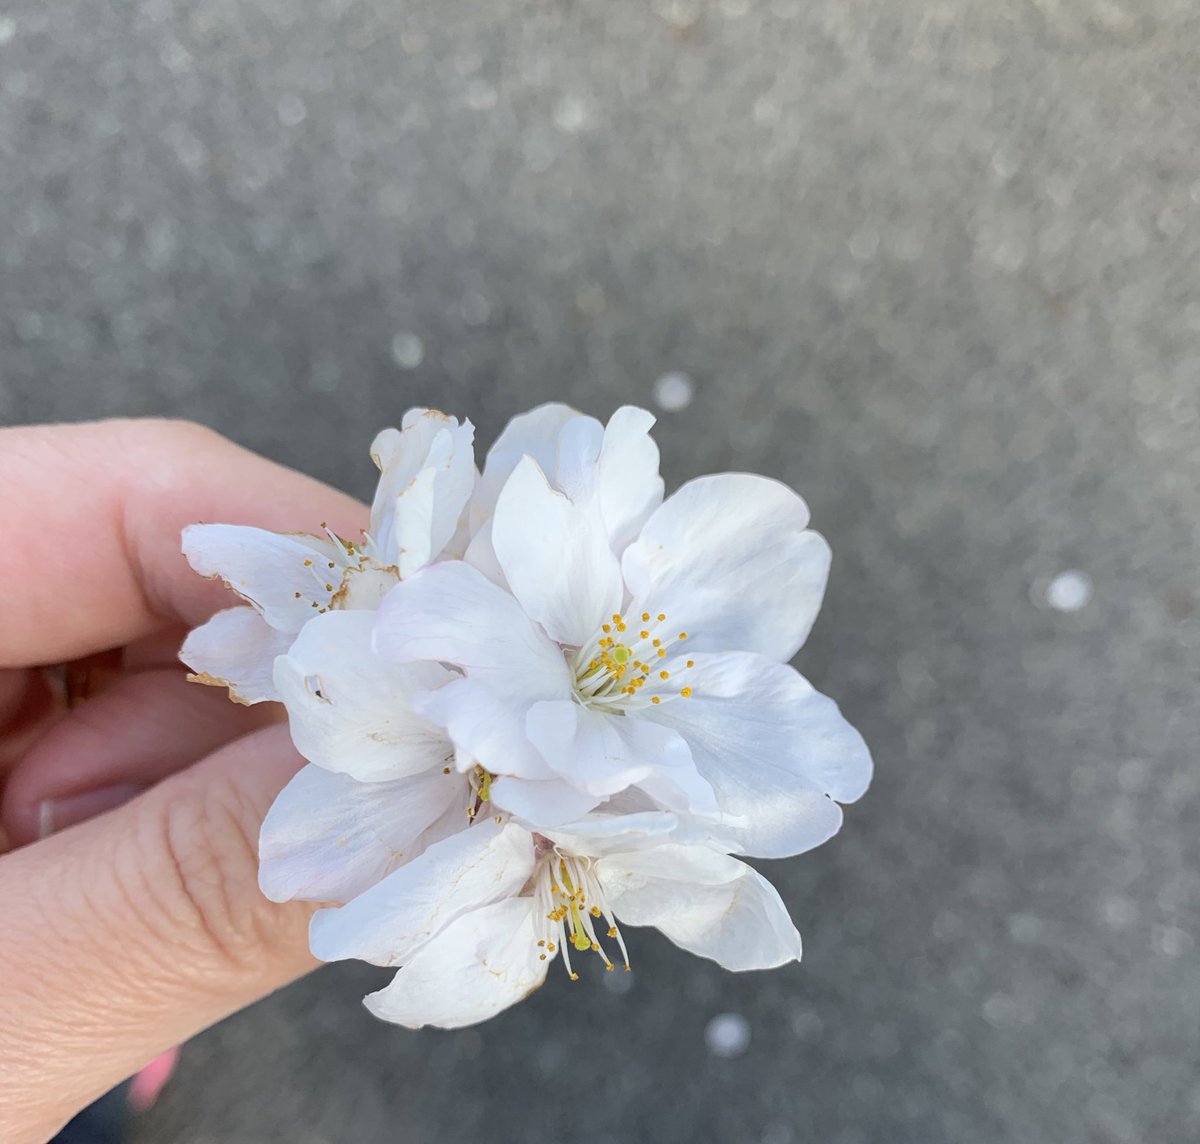 さあぽん 2 5 あさとよる Pa Twitter 落ちてた桜集めて息子がくれた小さな花束 これは押し花 にしたけど きれいなもの帰ったら見せてあげるねって渡してくれたシワシワになったタンポポとチューリップの花びらはどうしよう簡単に捨てられない